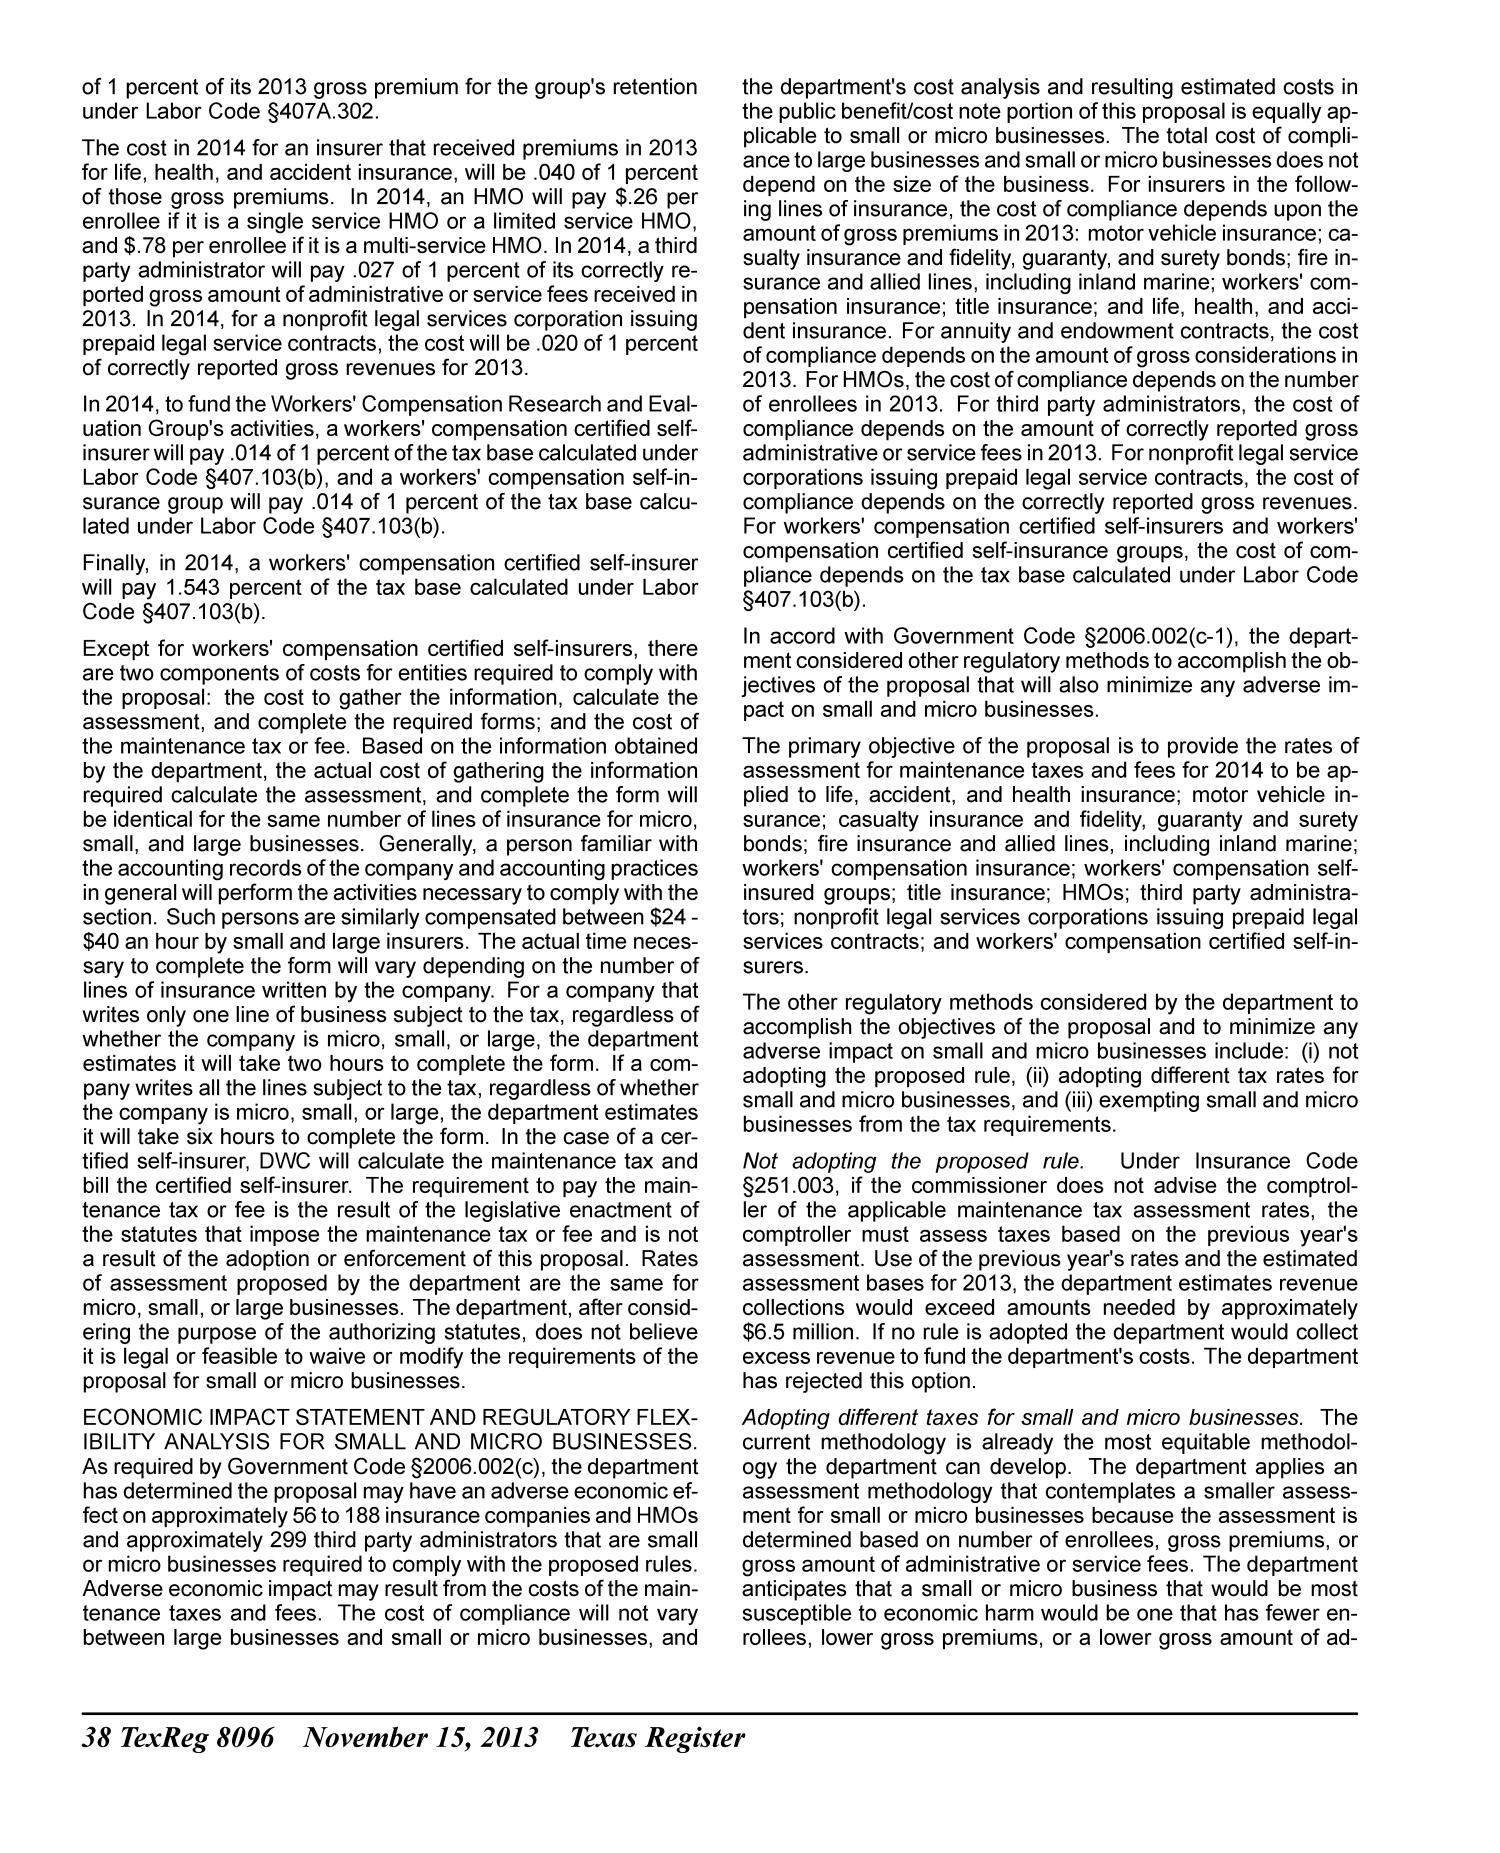 Texas Register, Volume 38, Number 46, Pages 8023-8312, November 15, 2013
                                                
                                                    8096
                                                